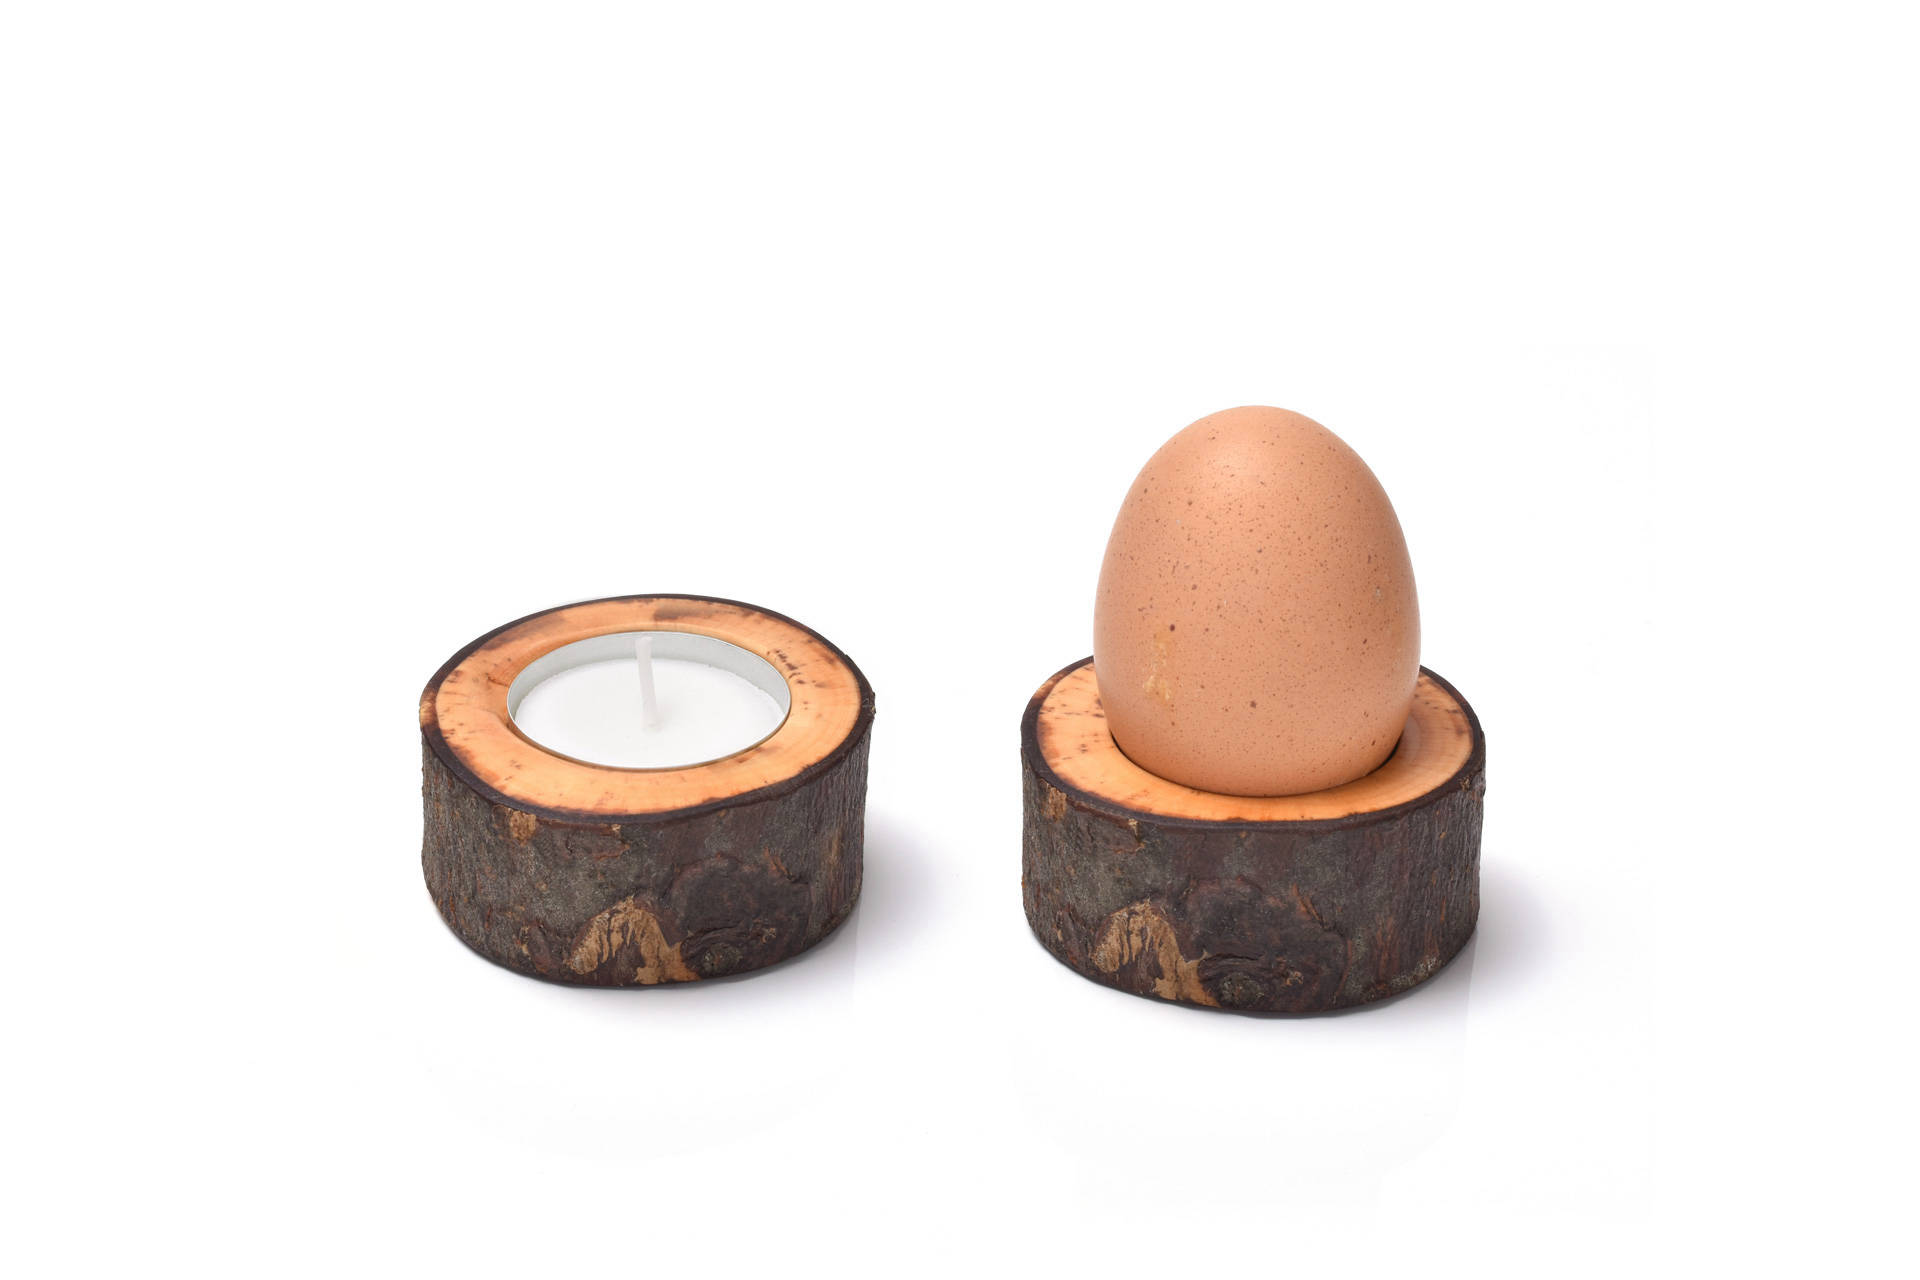 Hangefertigter Teelichthalter und Eierbecher aus Holz.